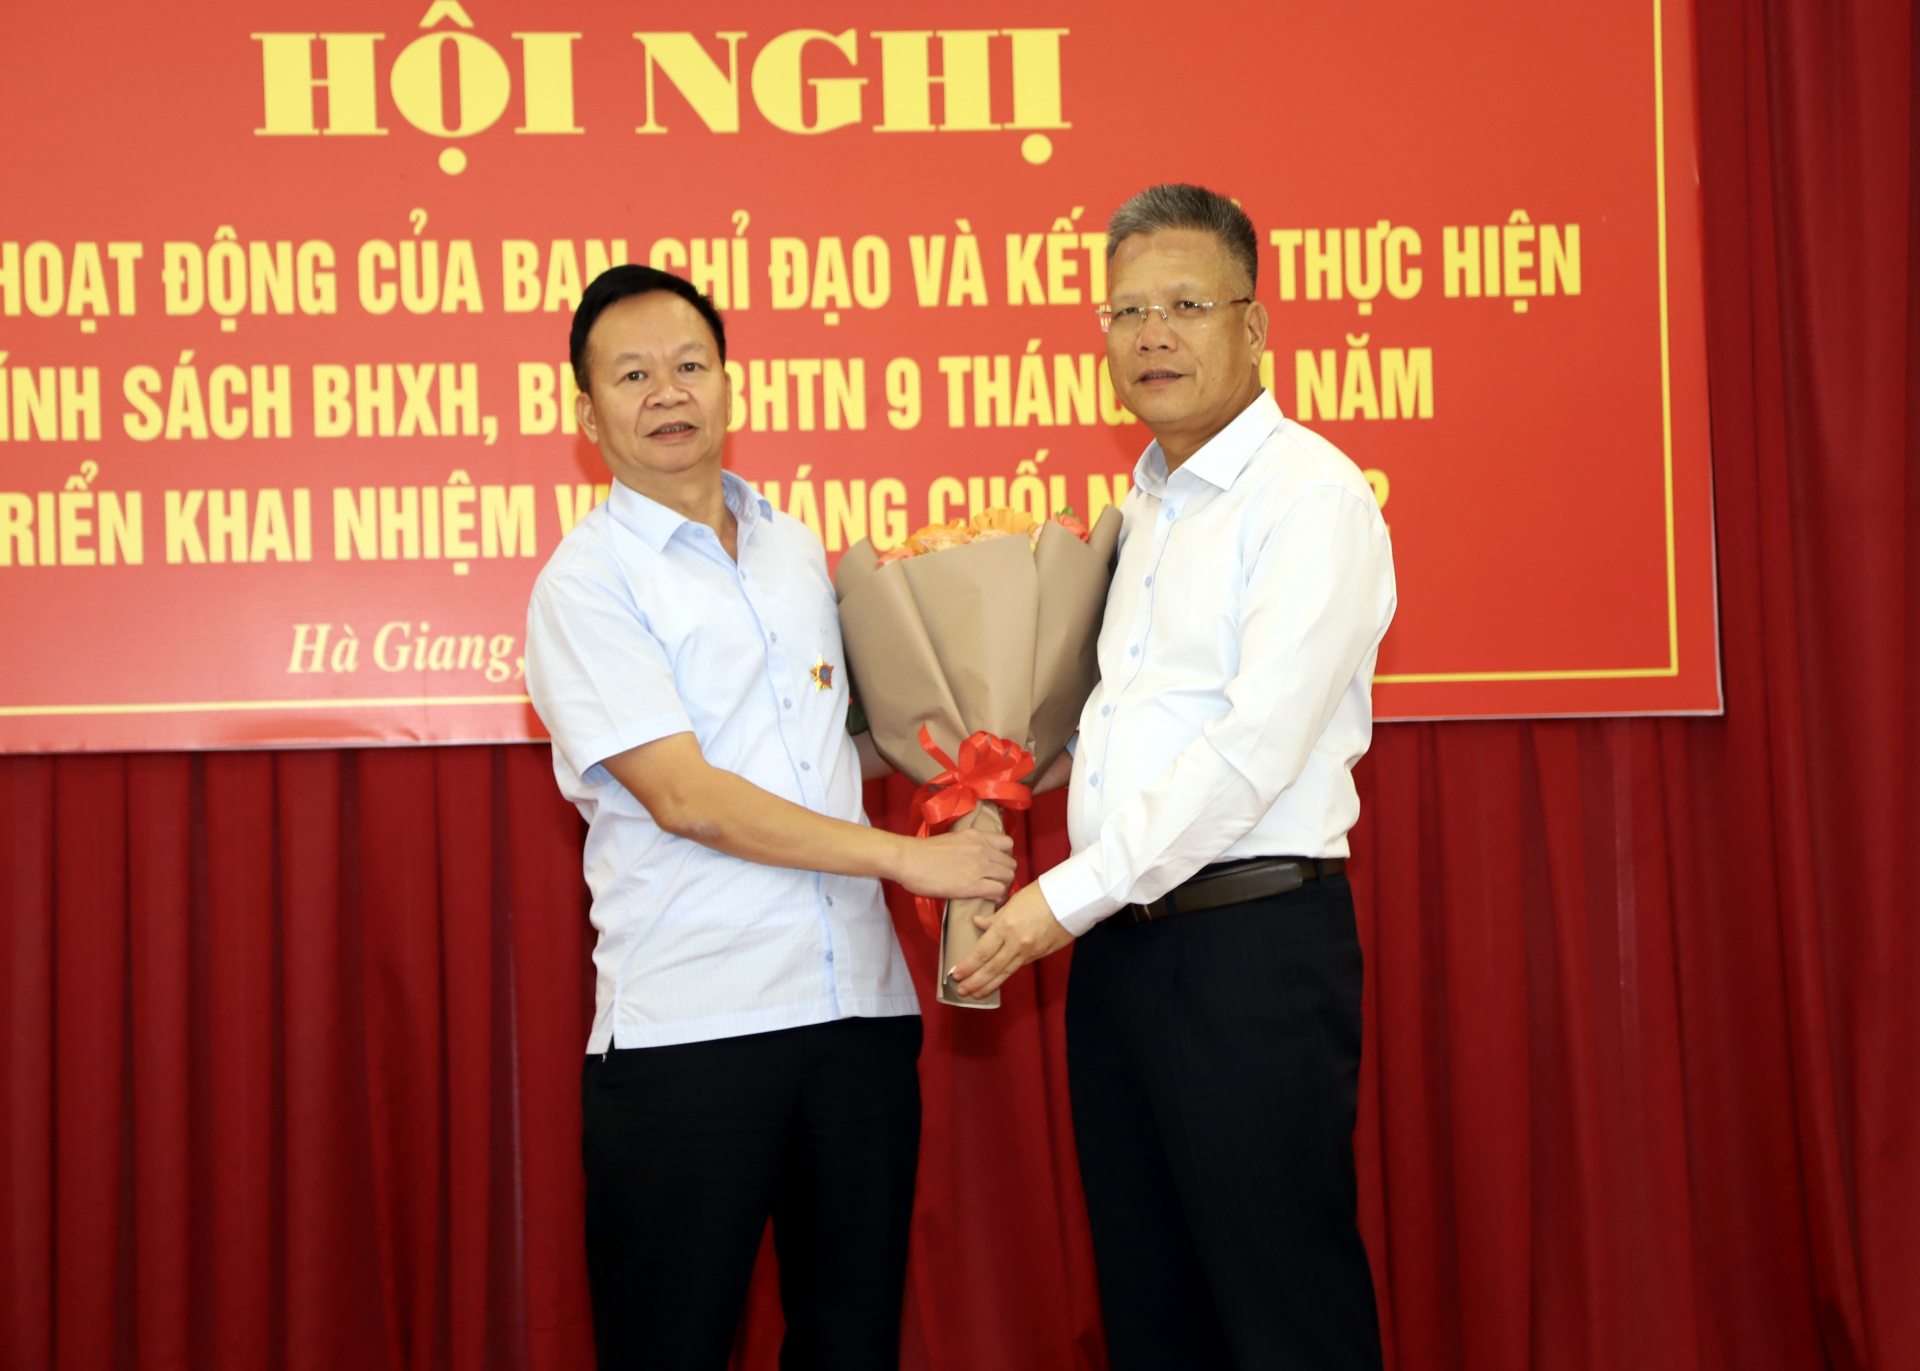 Phó tổng Giám đốc BHXH Việt Nam Trần Đình Liệu trao Kỷ niệm Chương và tặng hoa chúc mừng Giám đốc Sở Tài chính Nguyễn Ngọc Thanh 